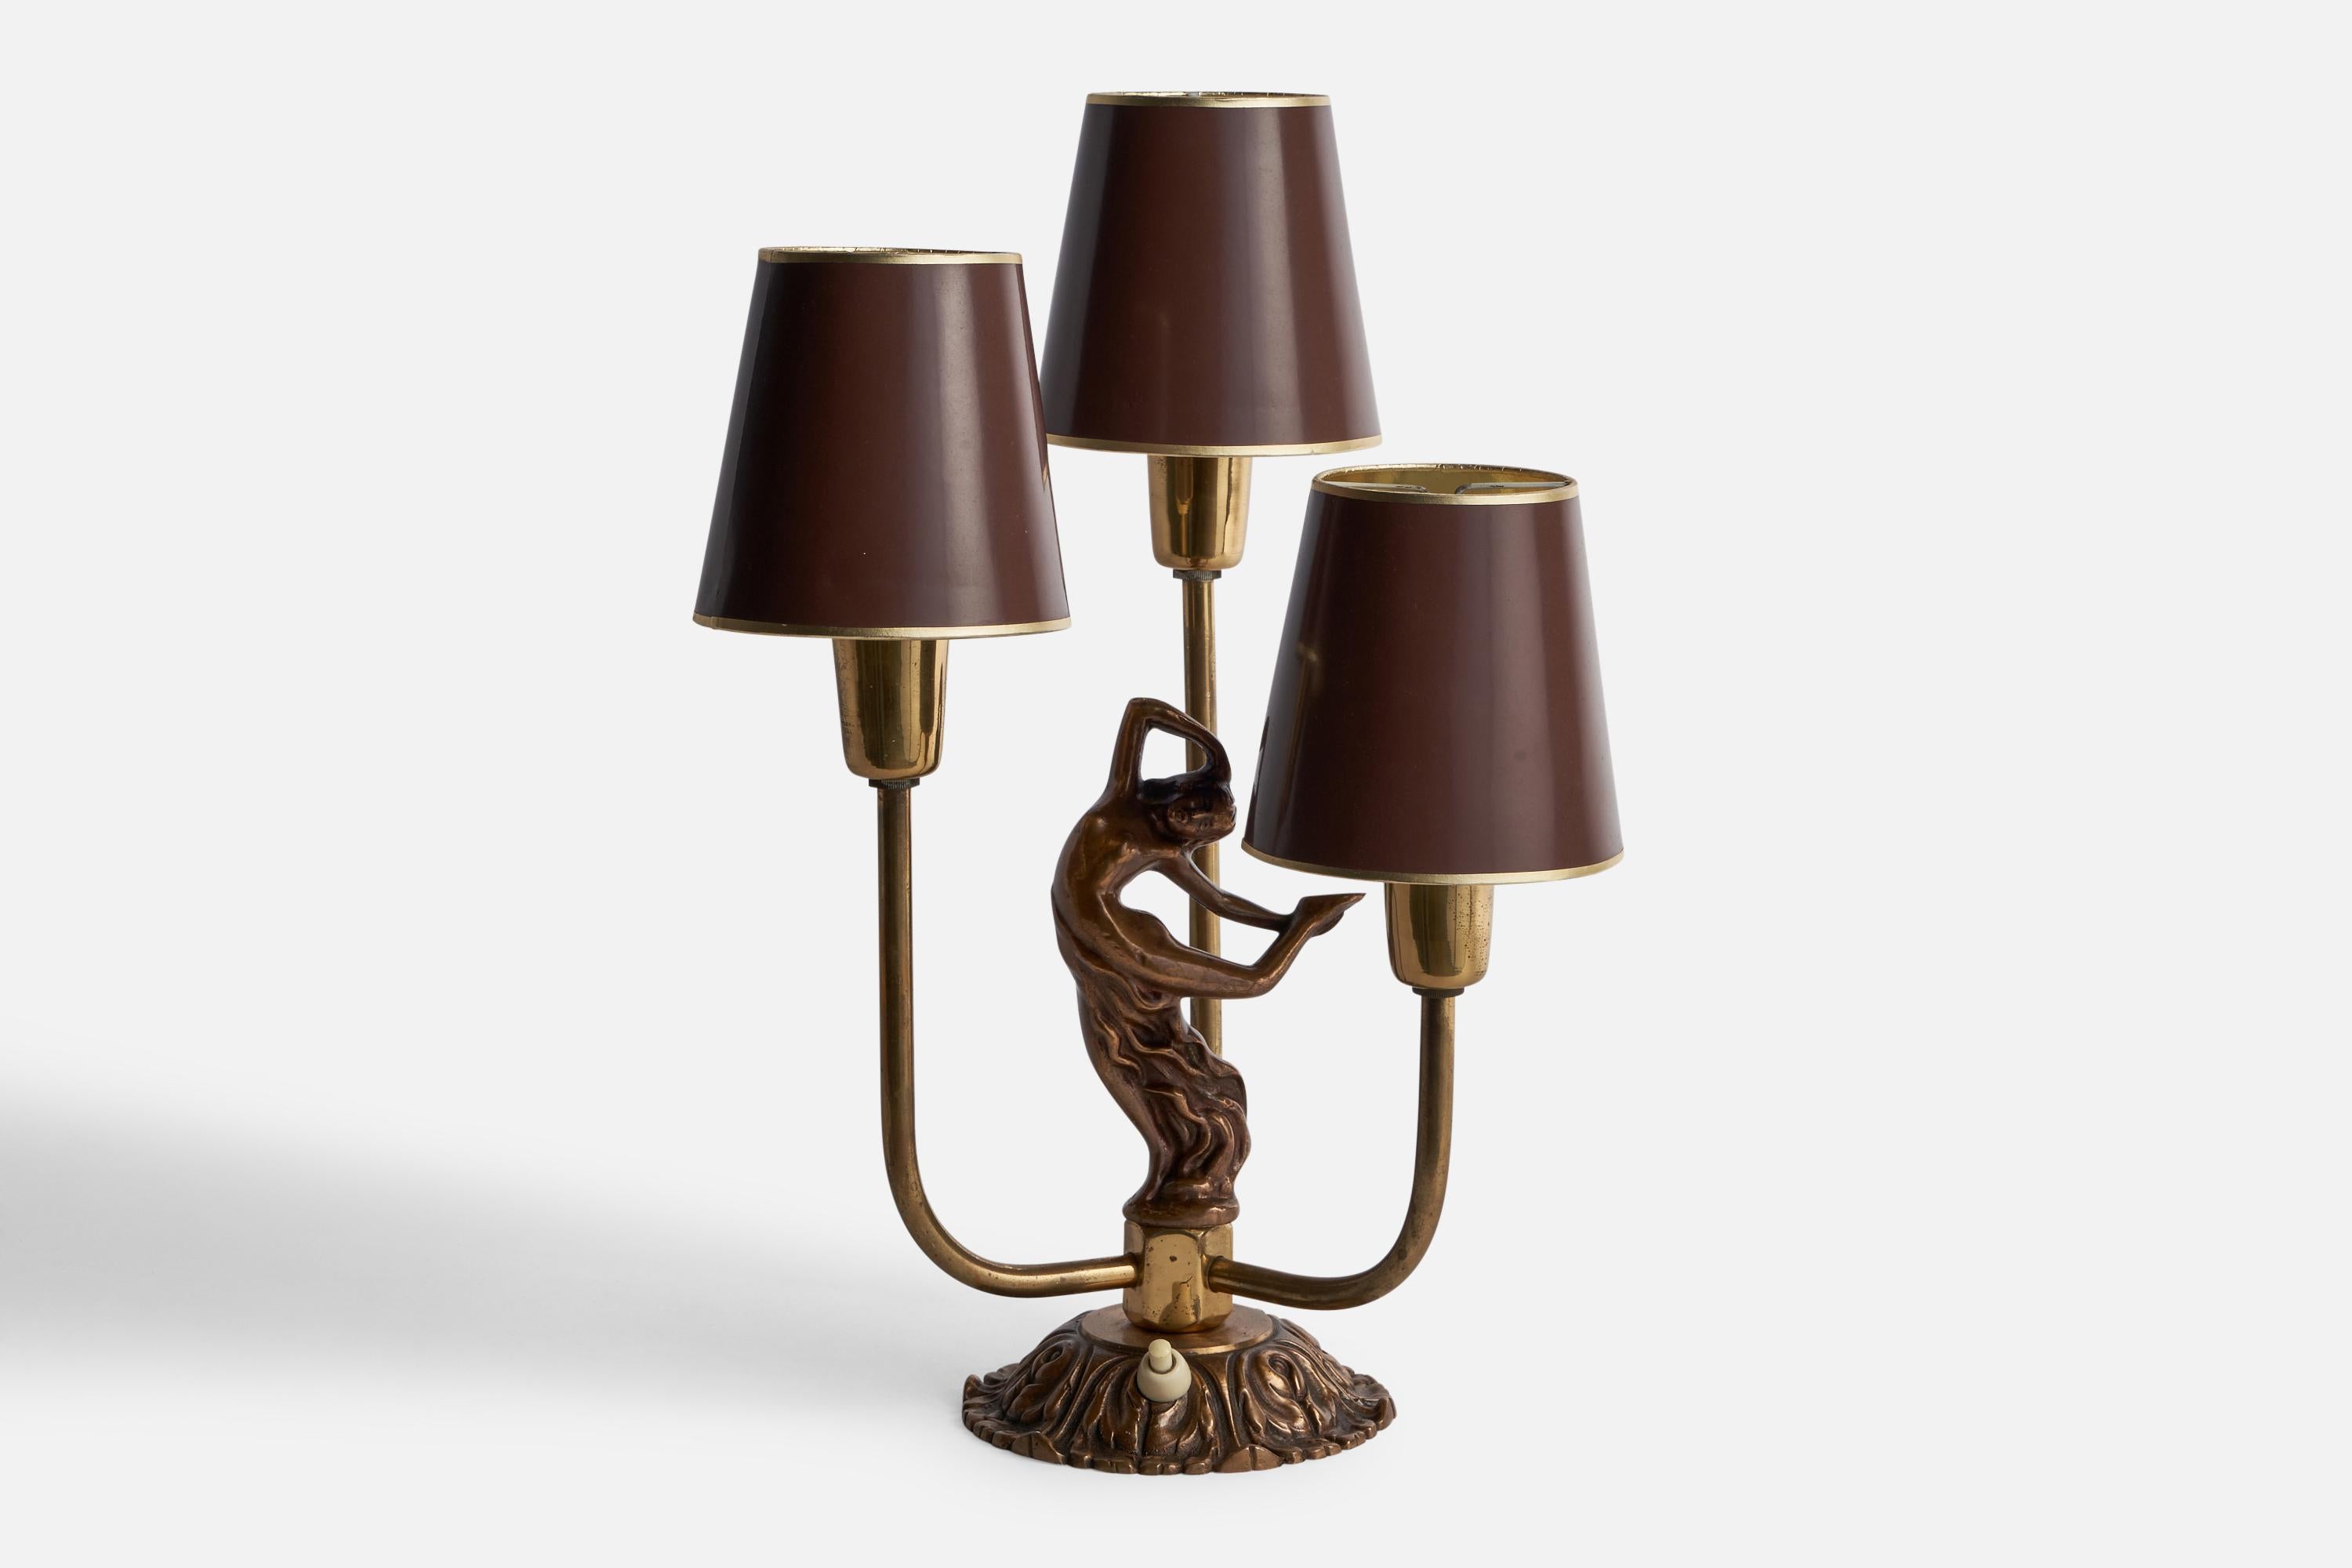 Lampe de table à trois bras en laiton et papier laqué brun, conçue et produite en Suède, années 1930.

Dimensions globales (pouces) : 14.5